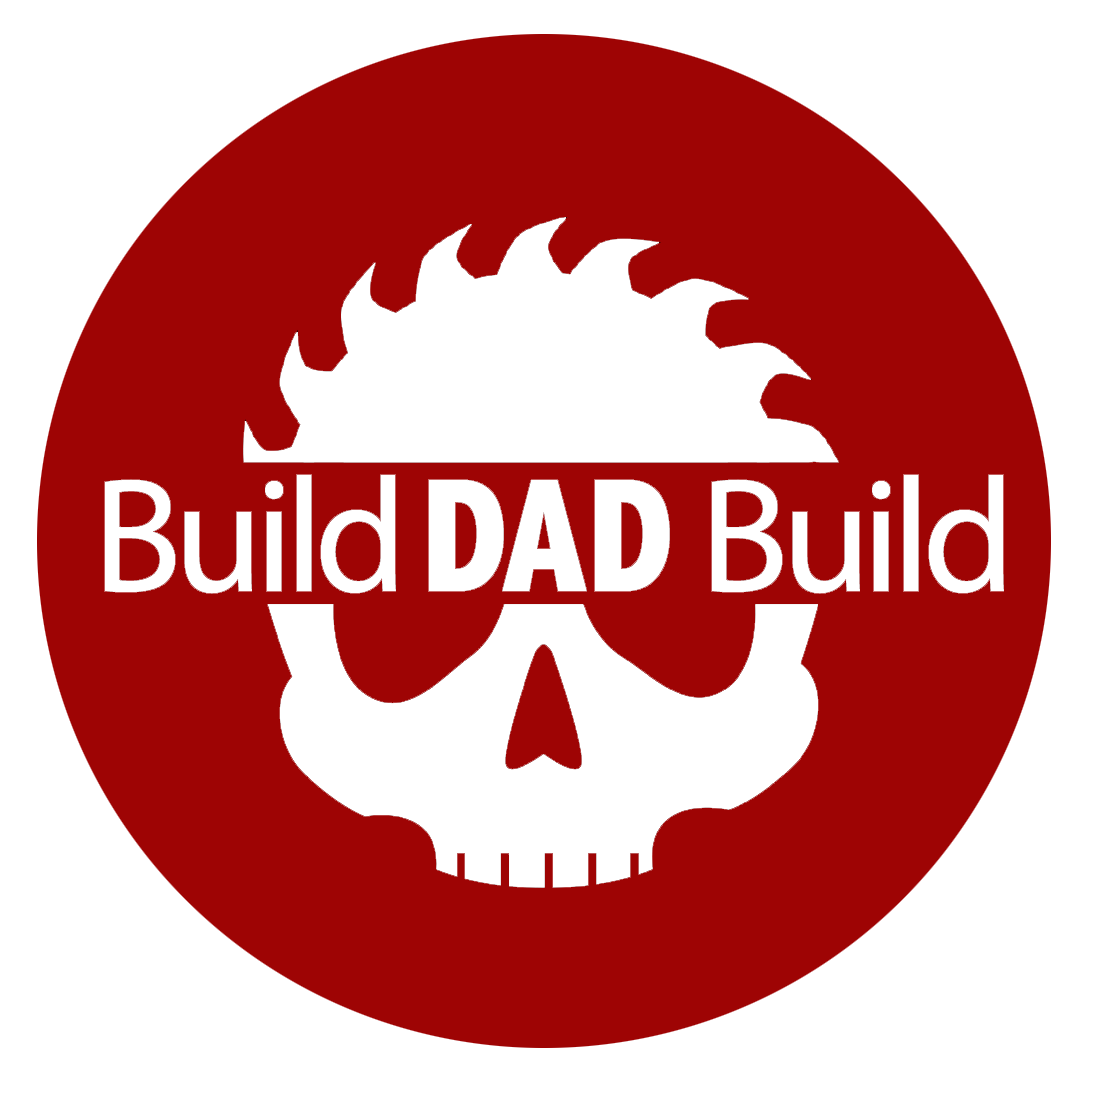 Build DAD Build